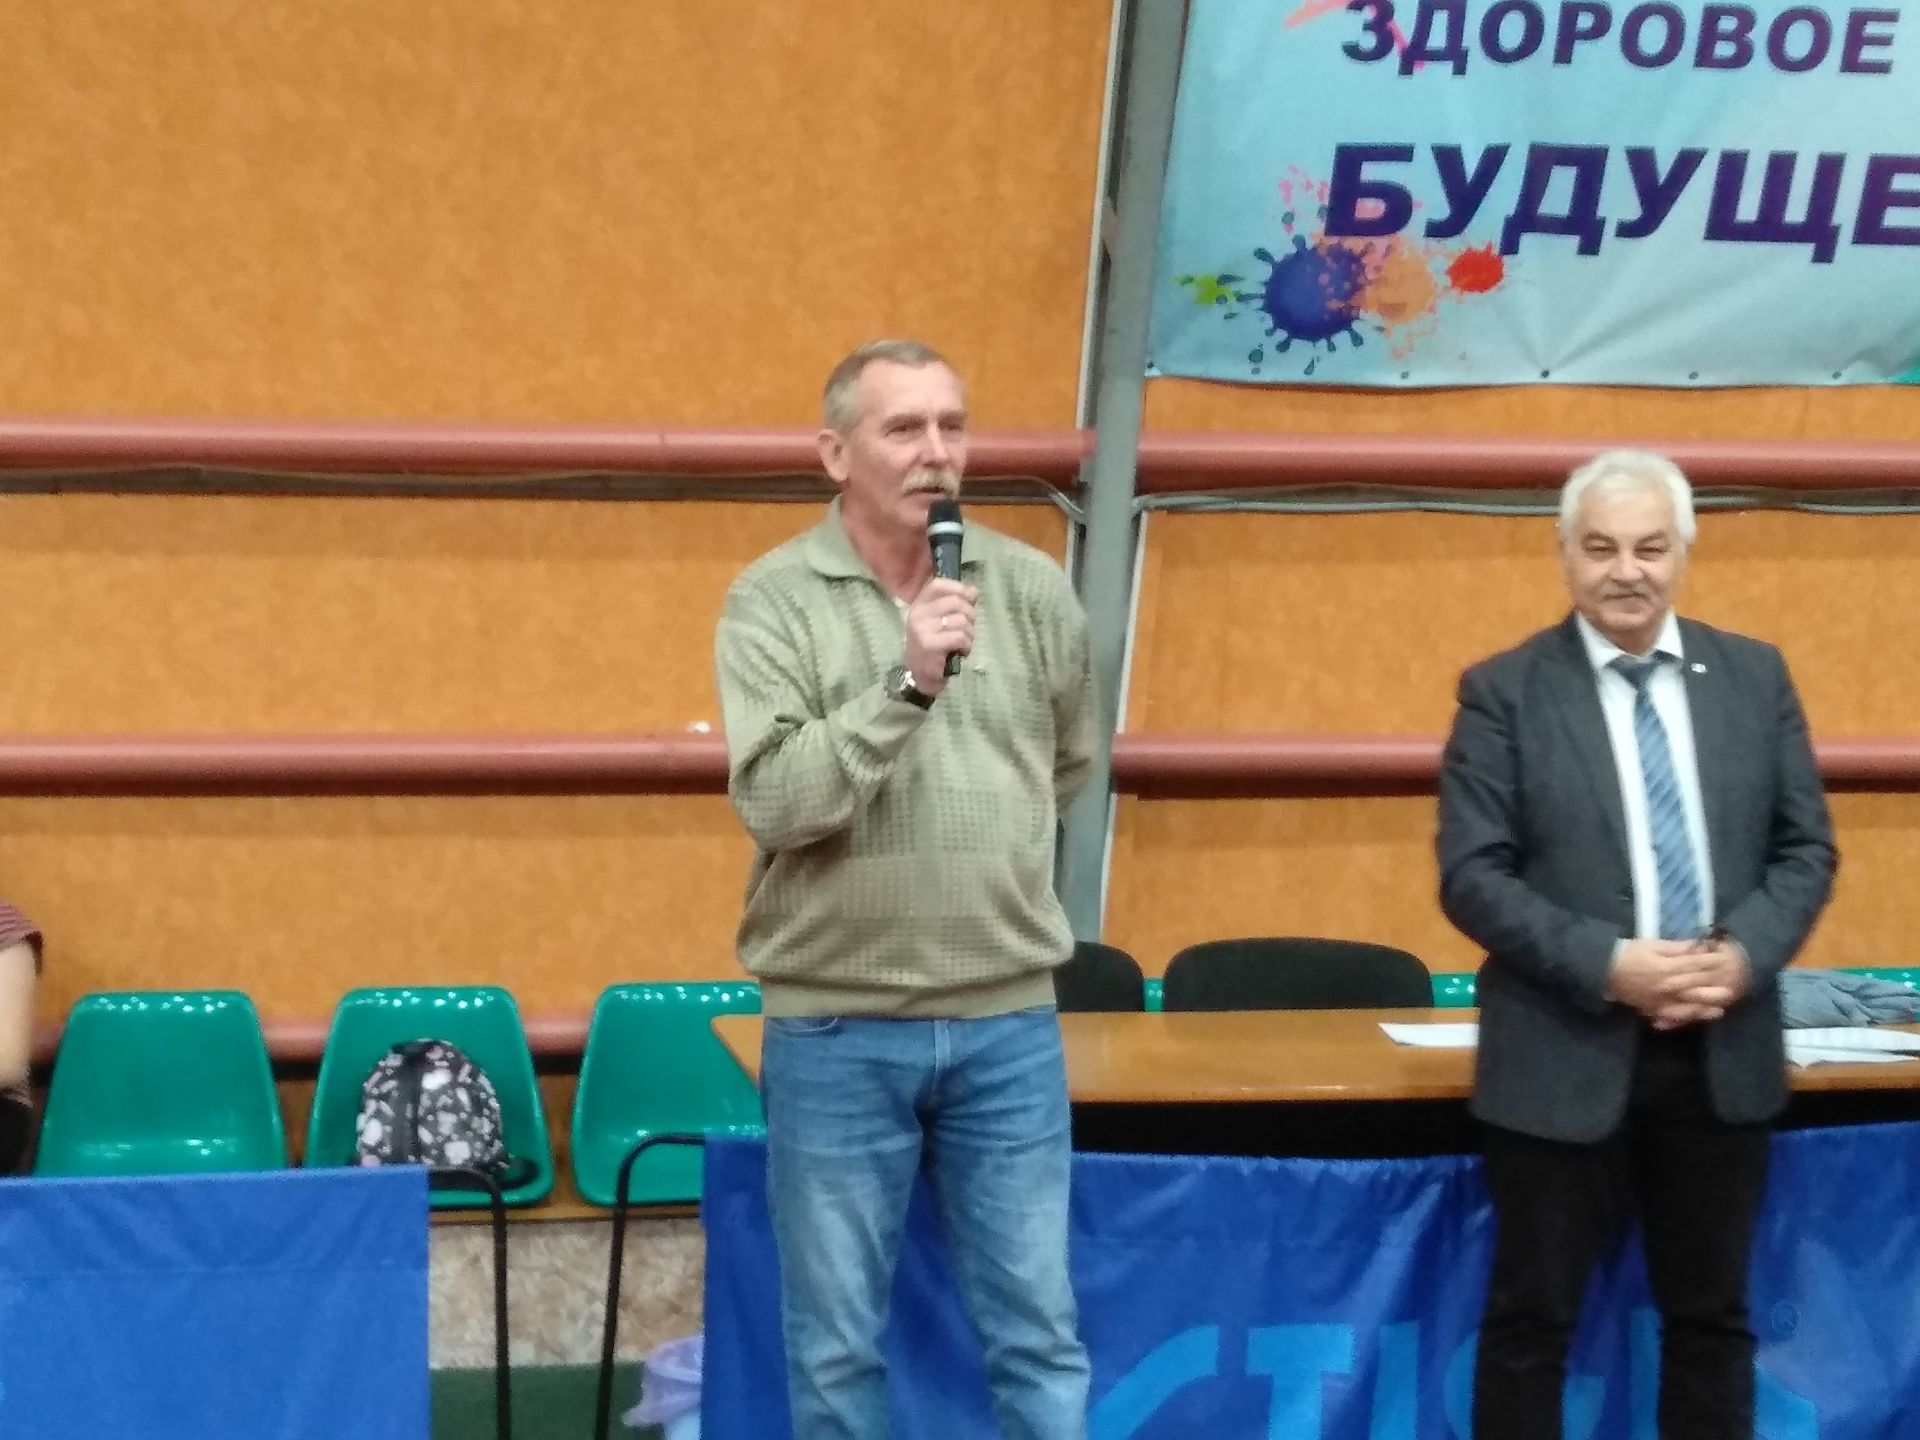 Мензелинск принимает Чемпионат Татарстана по настольному теннису